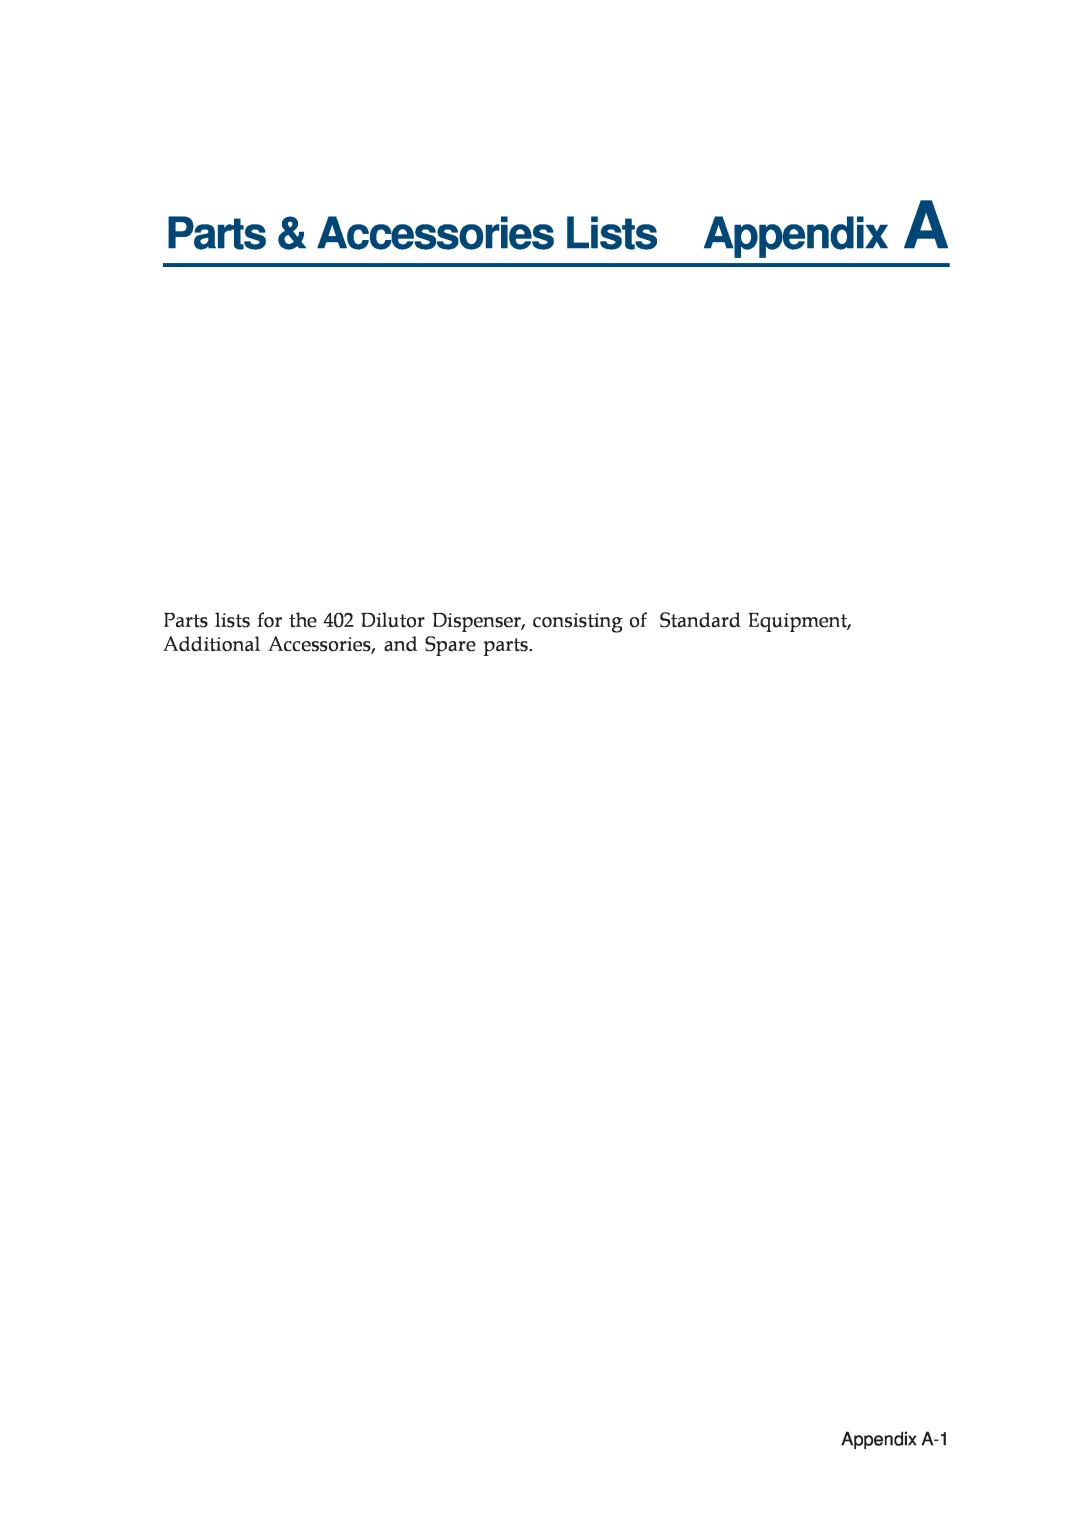 Gilson 402 manual Parts & Accessories Lists Appendix A, Appendix A-1 